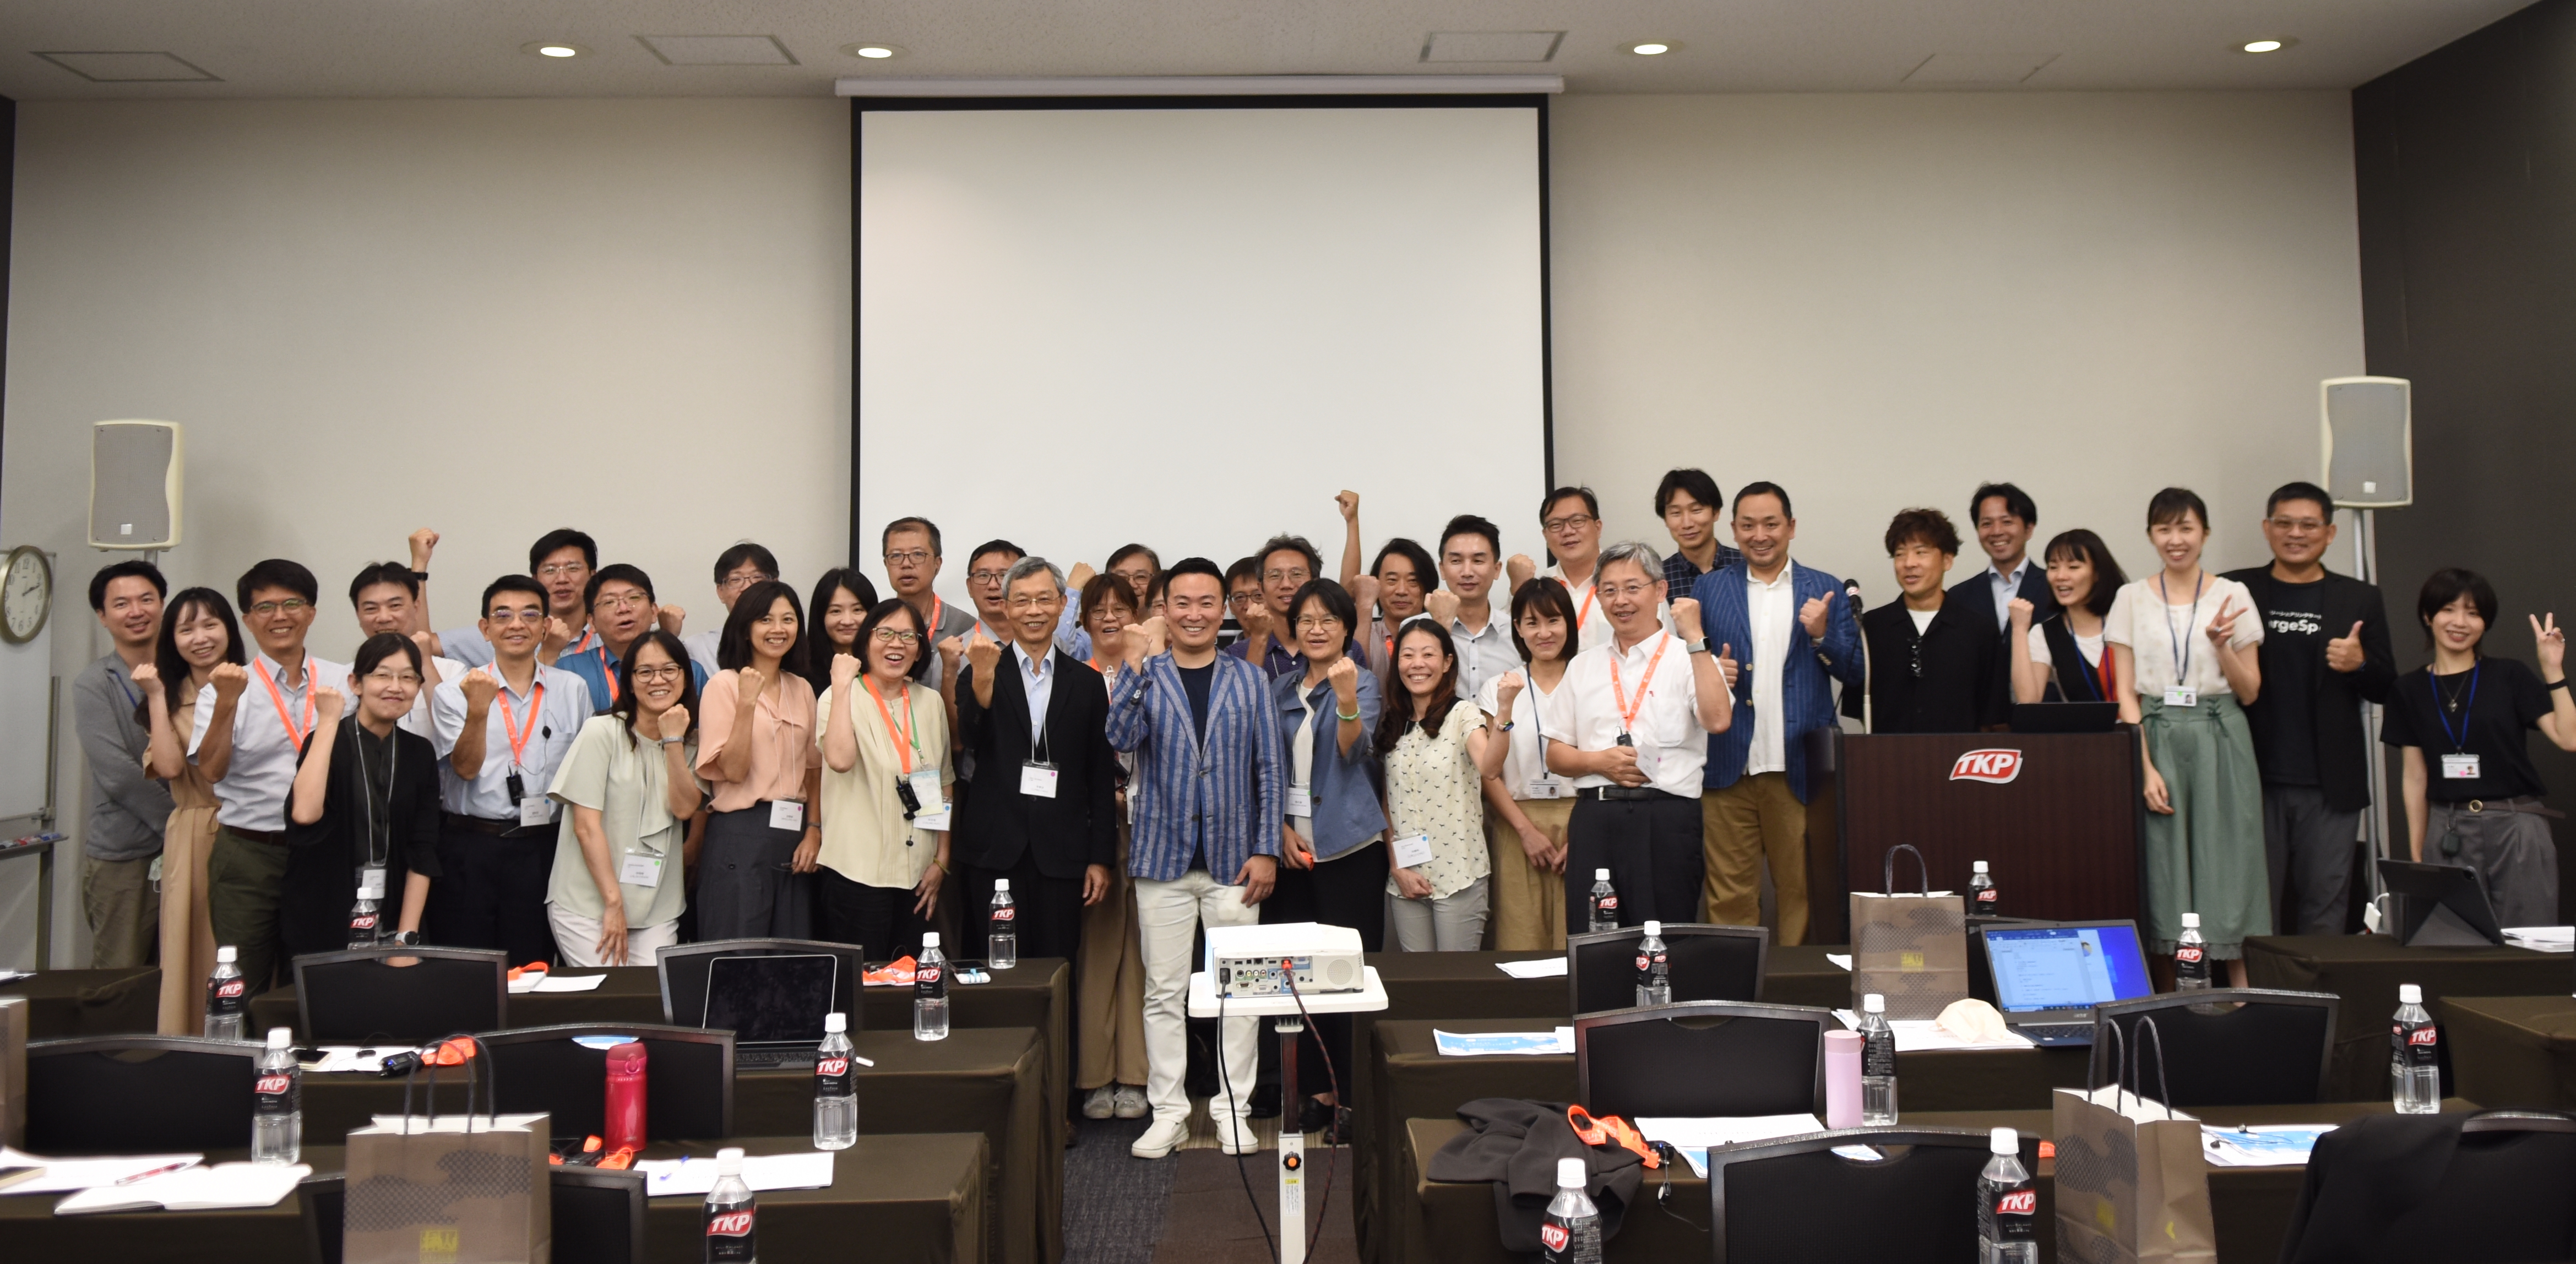 台湾の台湾行政院人事行政総処が、協会幹事 INFORICH社を訪問されました。